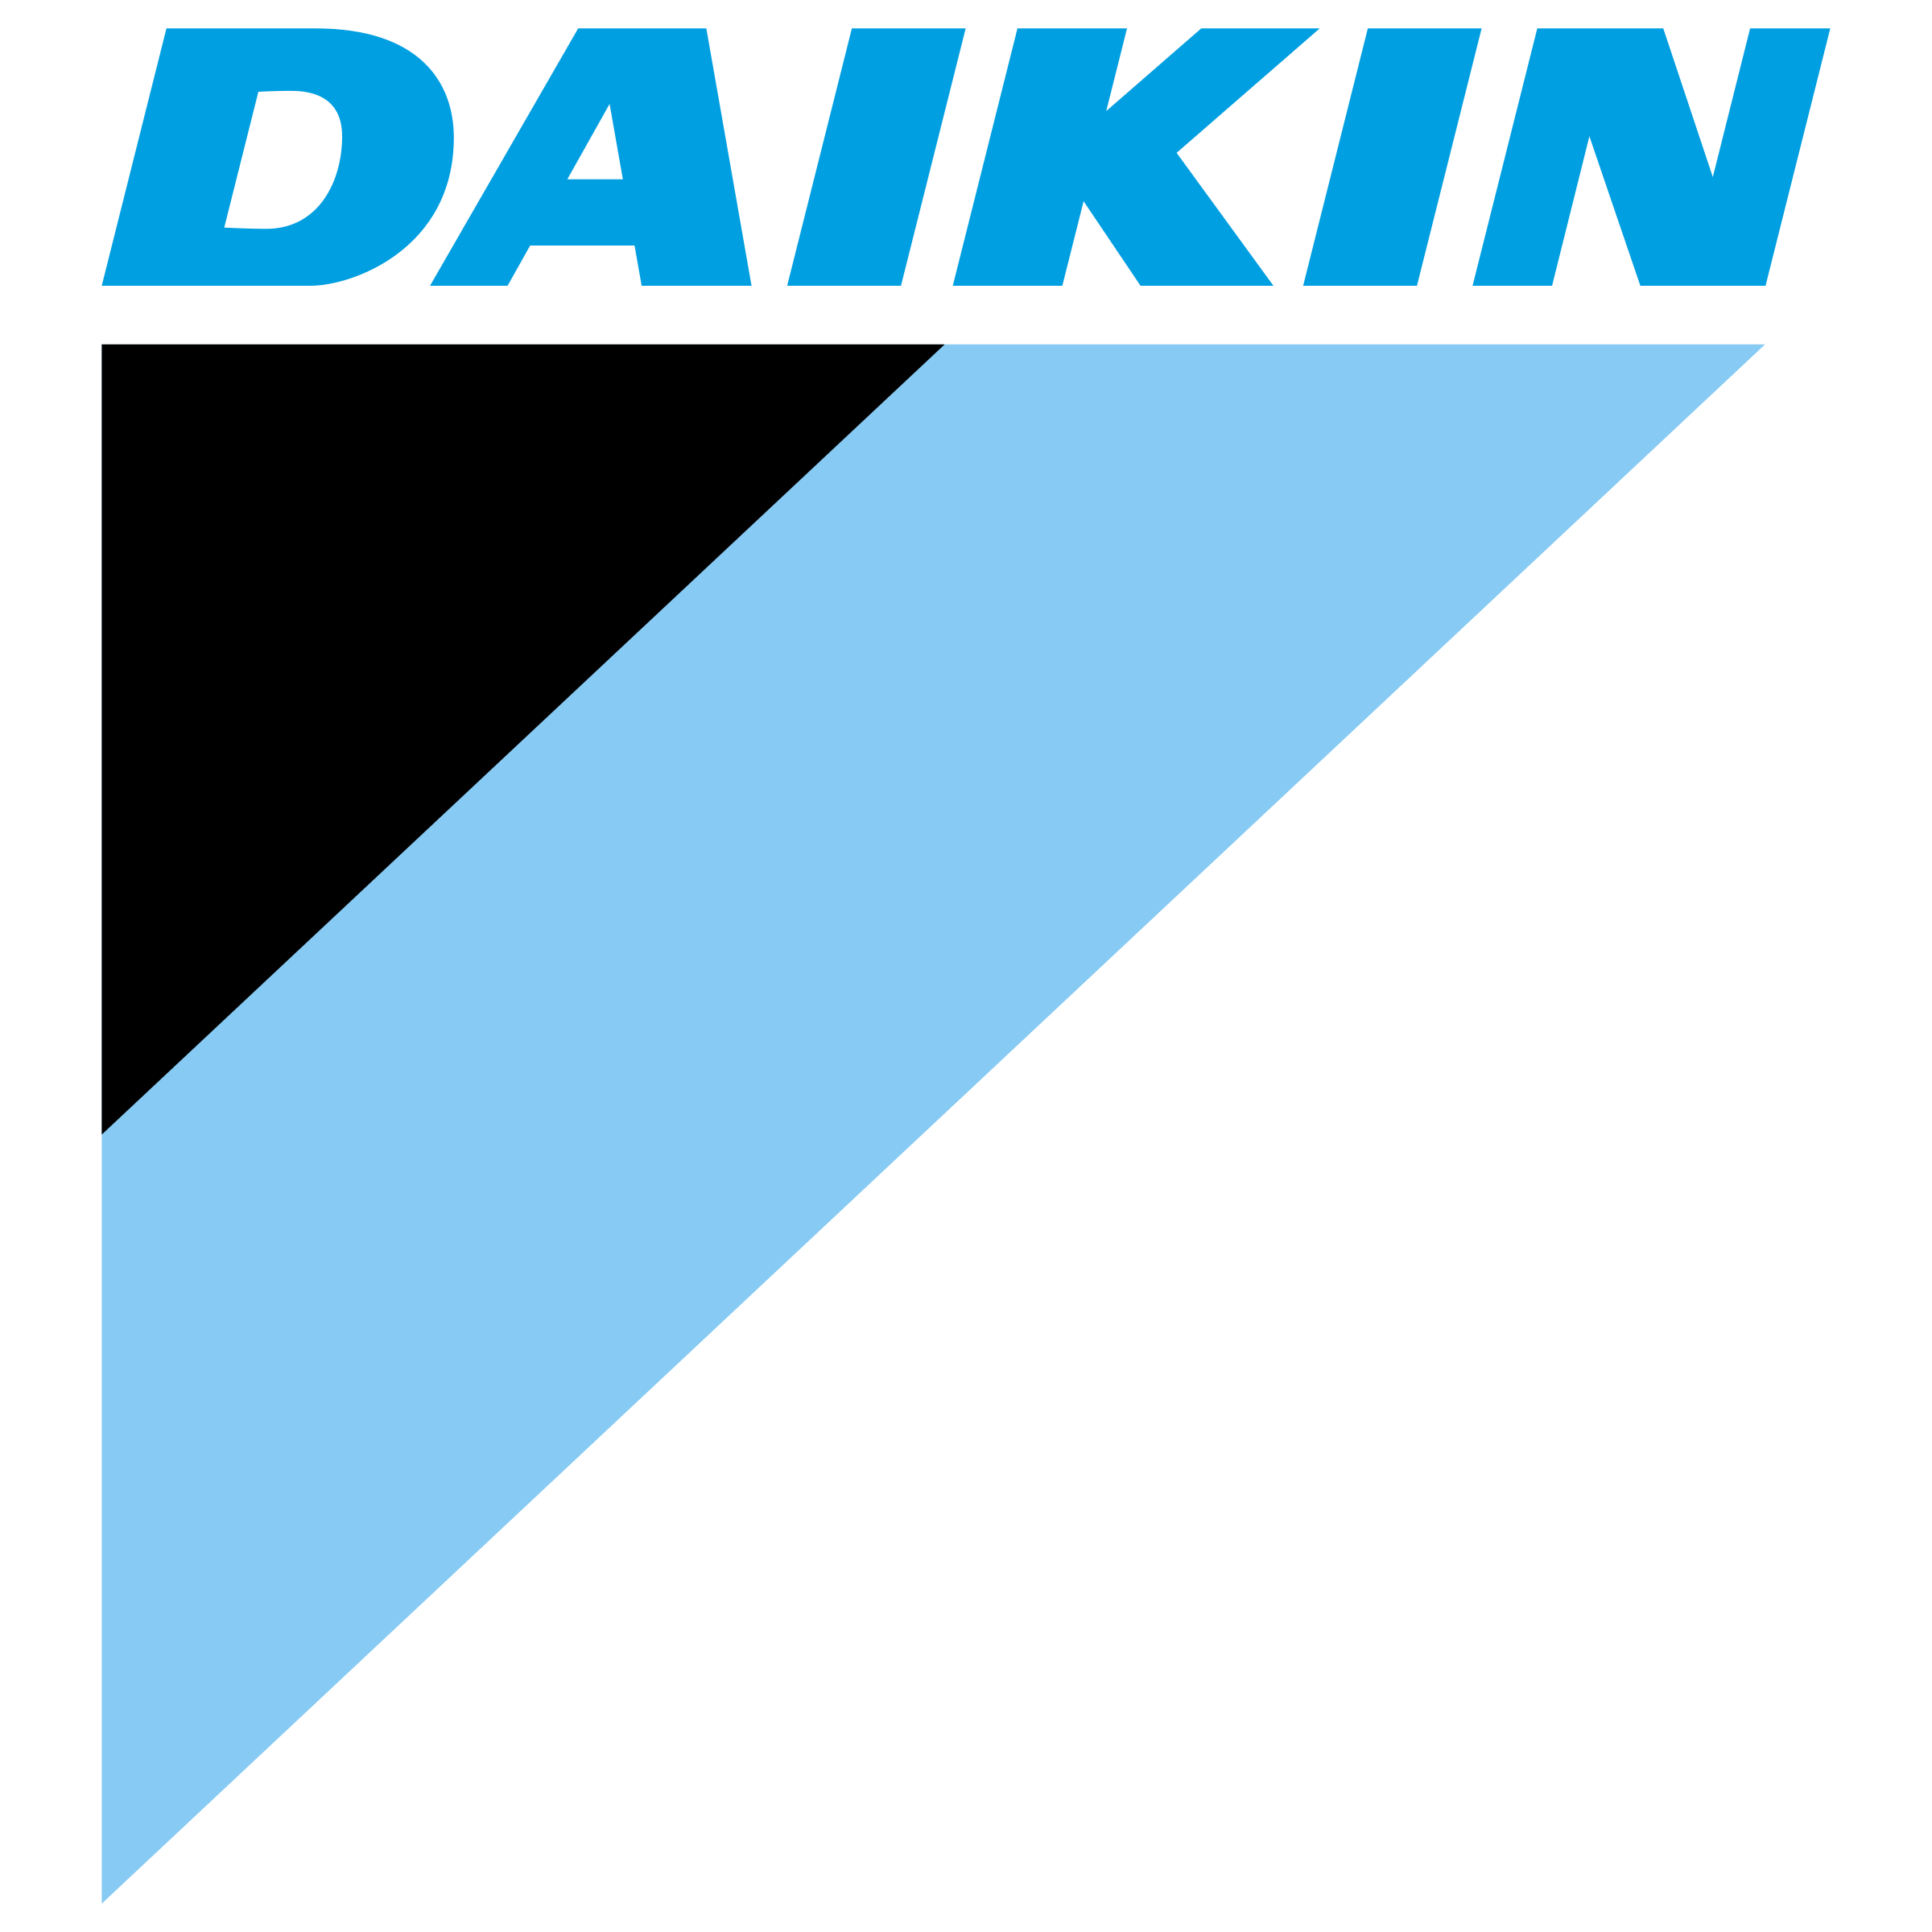 Daikin Logo Transparant Afbeeldingen